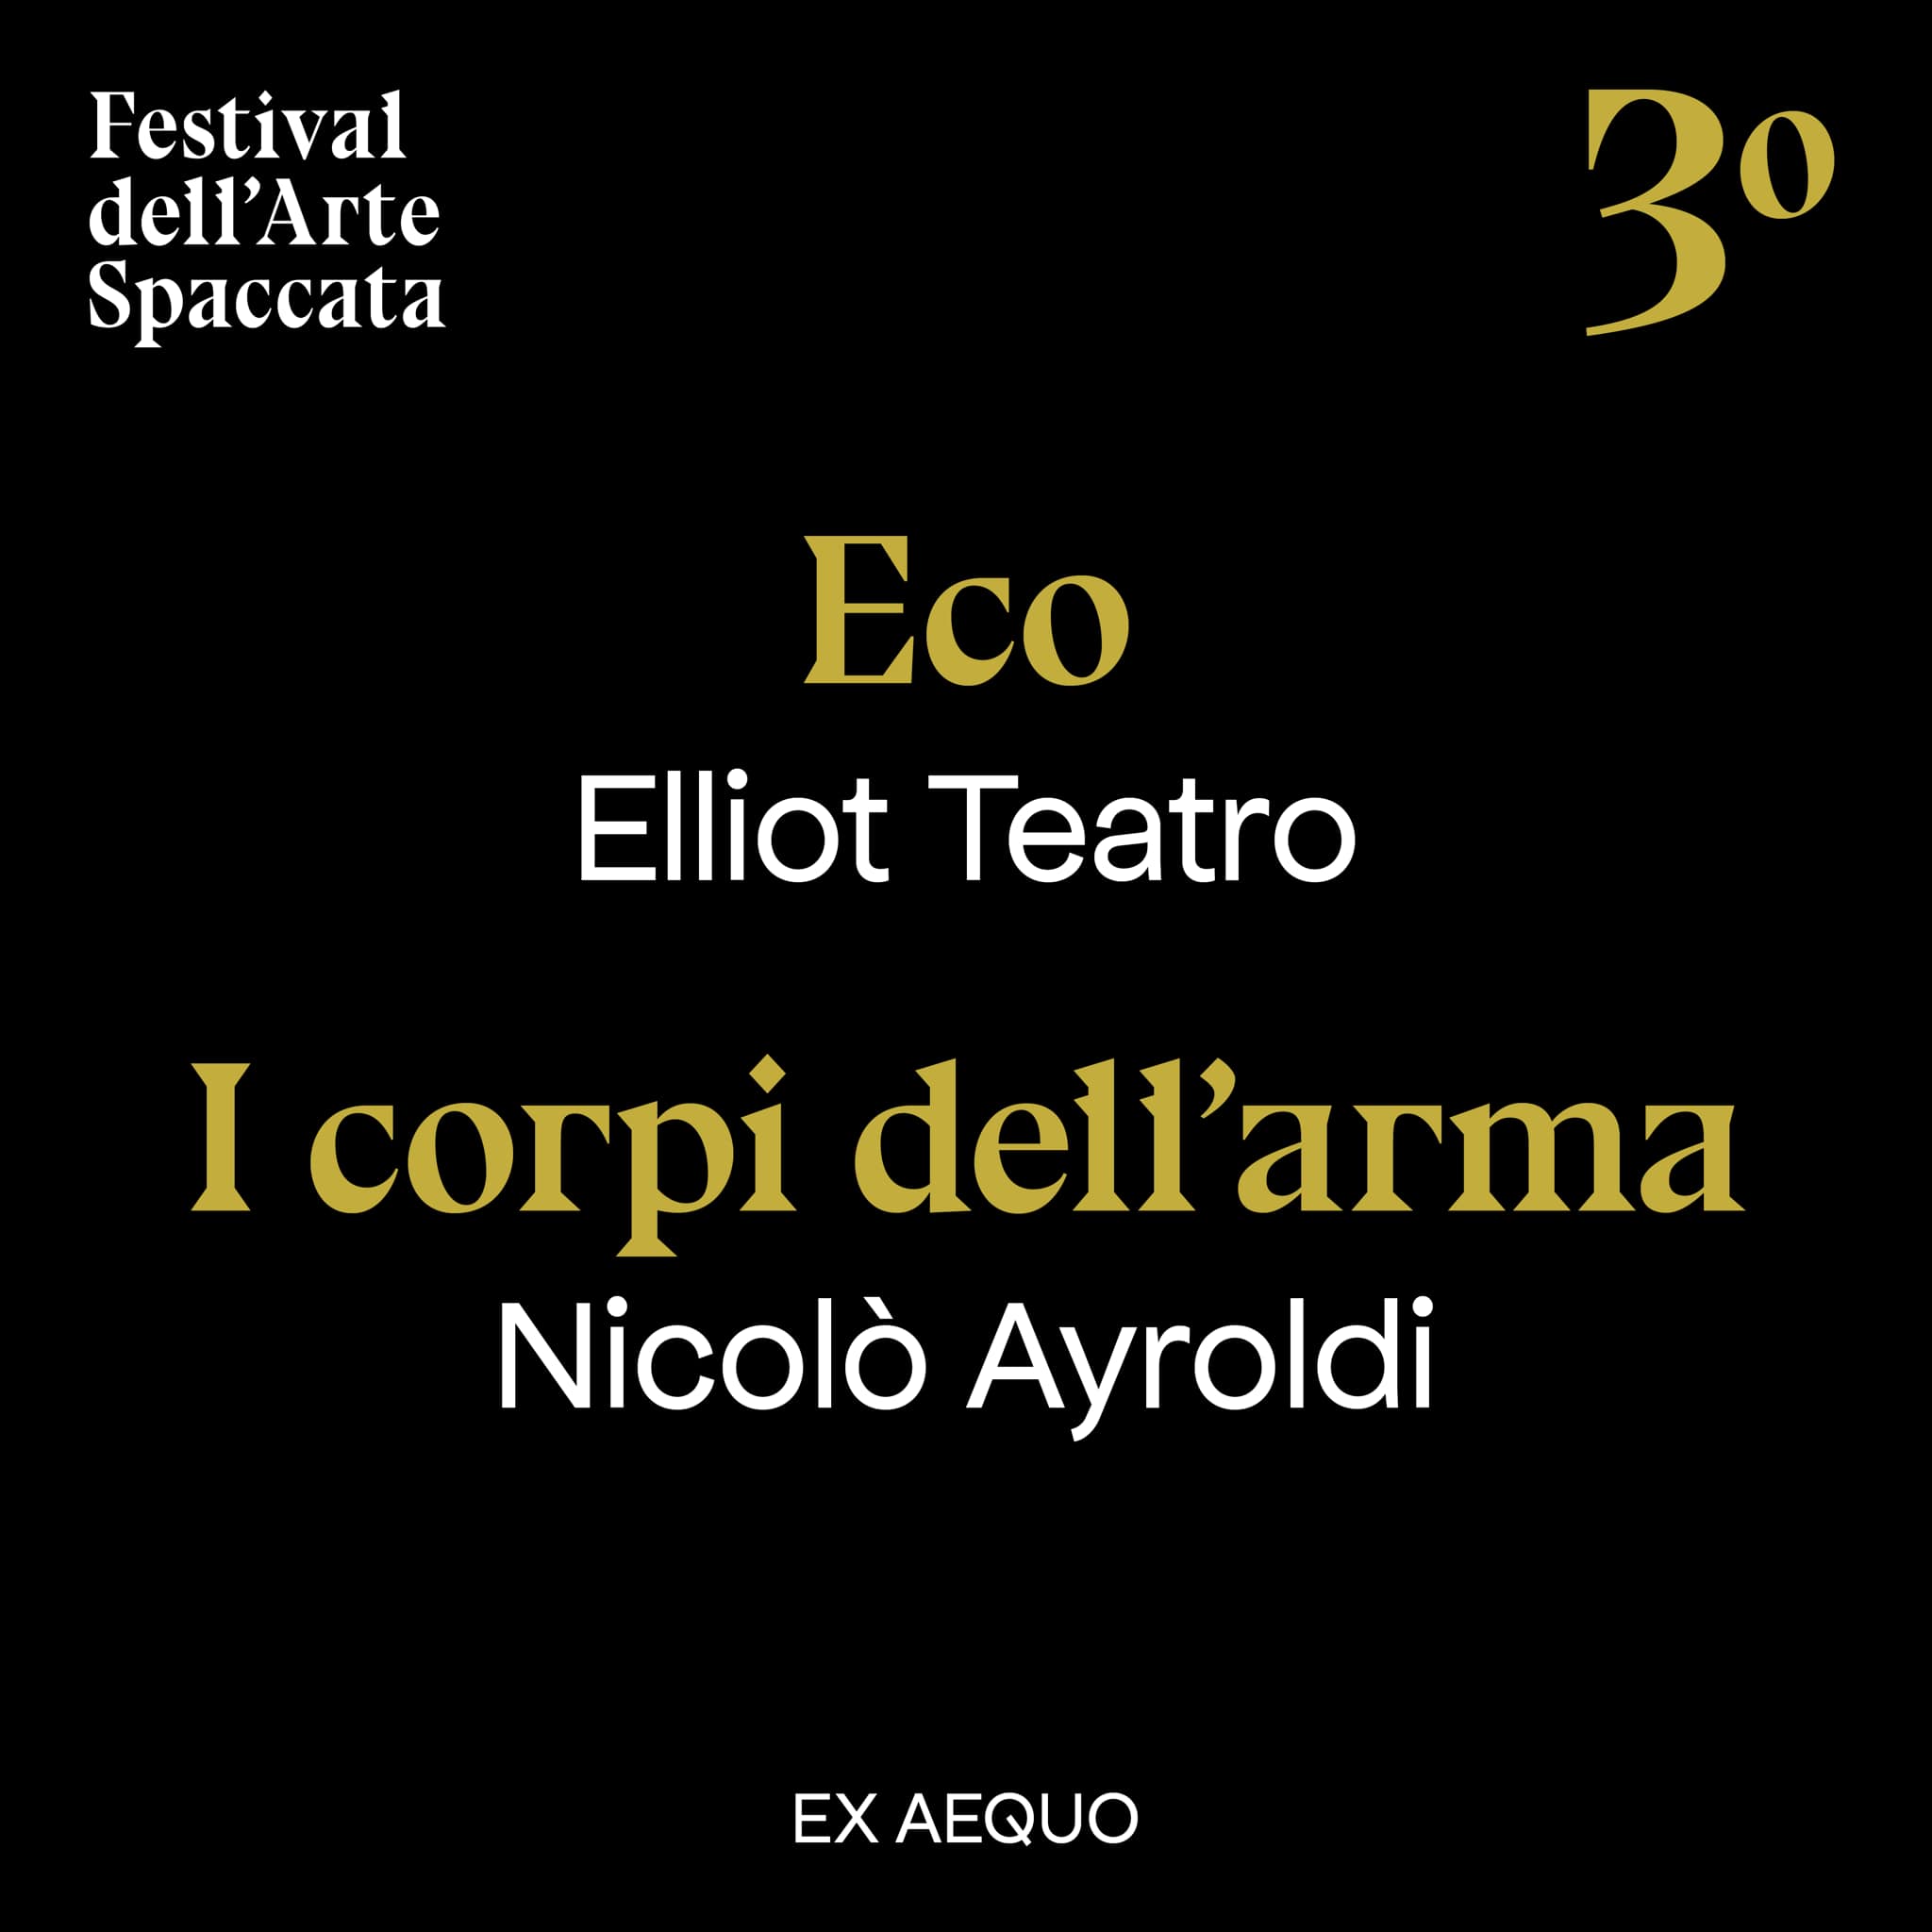 Festival dell'Arte Spaccata 2021, Terzo classificato, Elliot Teatro, Nicolò Ayroldi